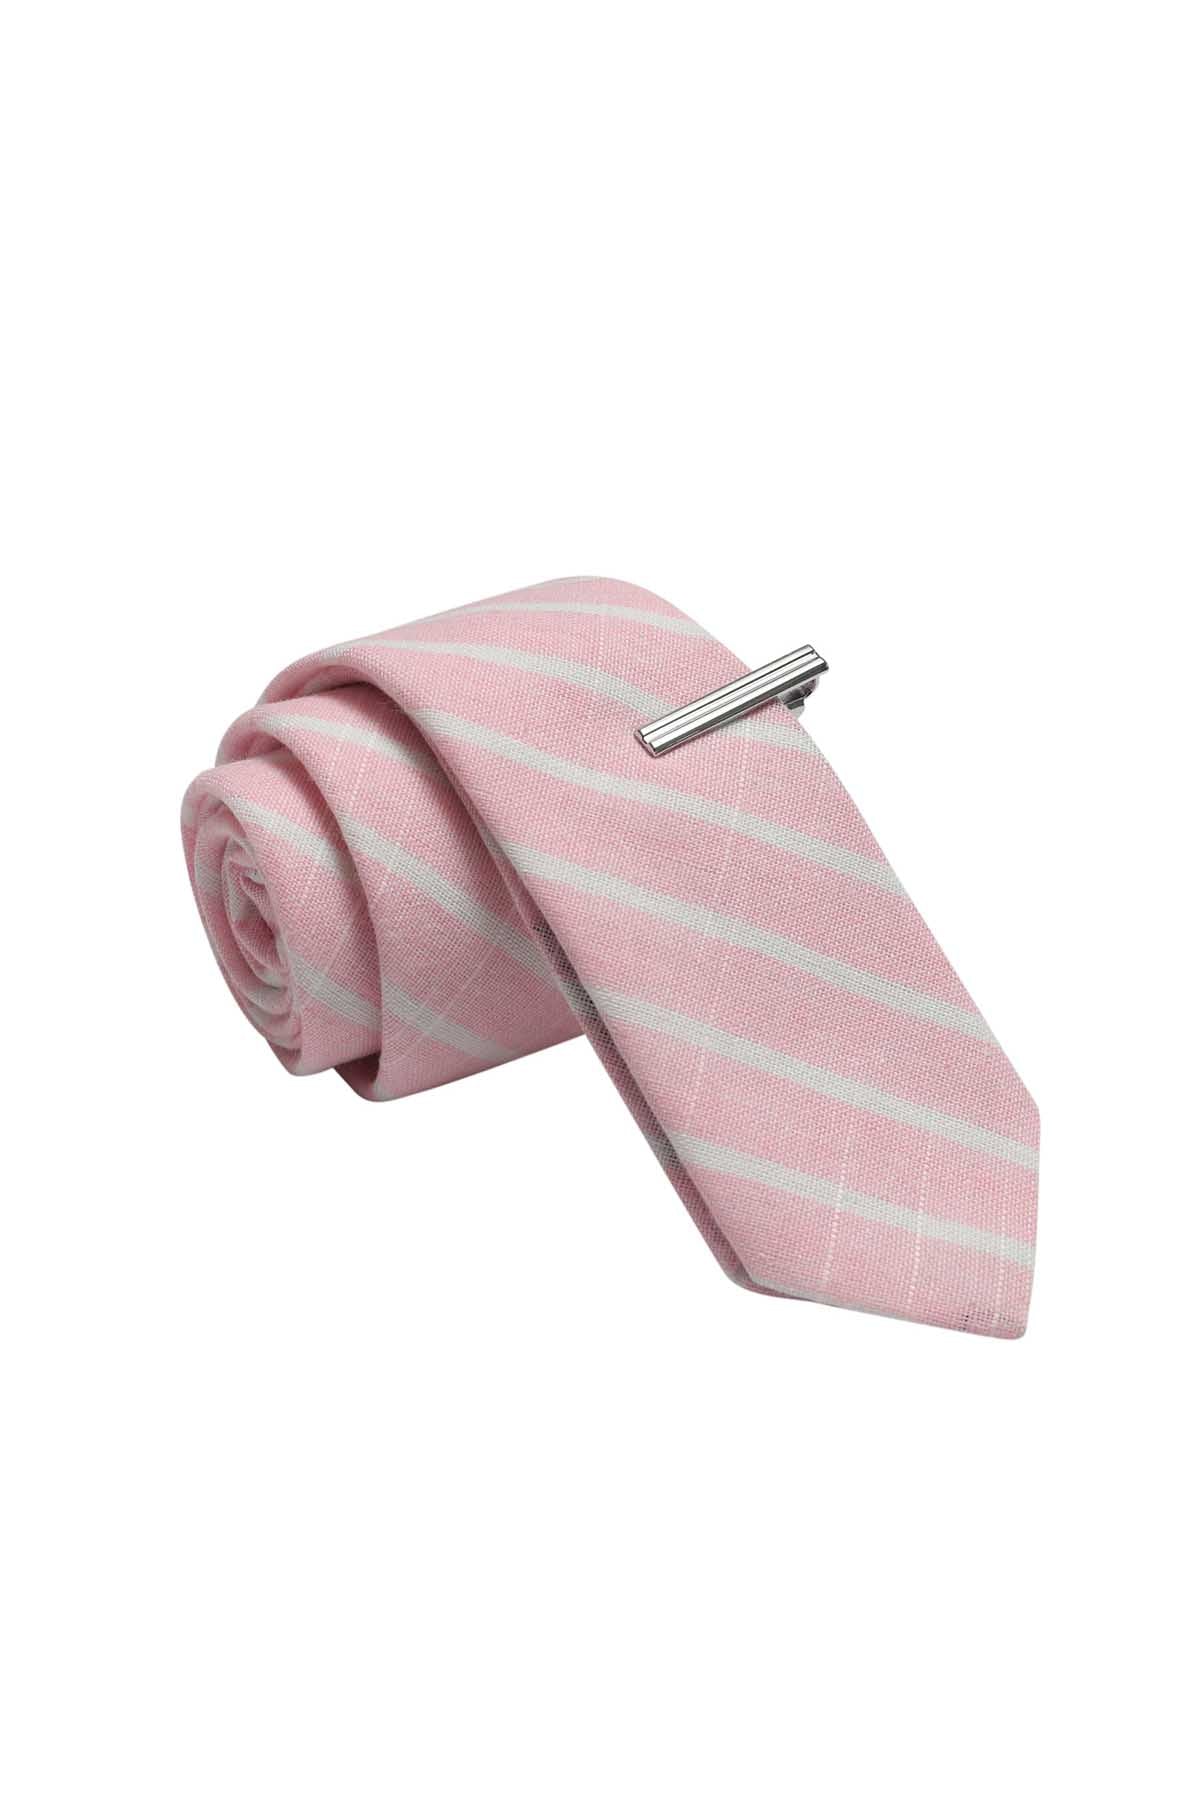 Skinny Tie Madness Pink Pantry Tie